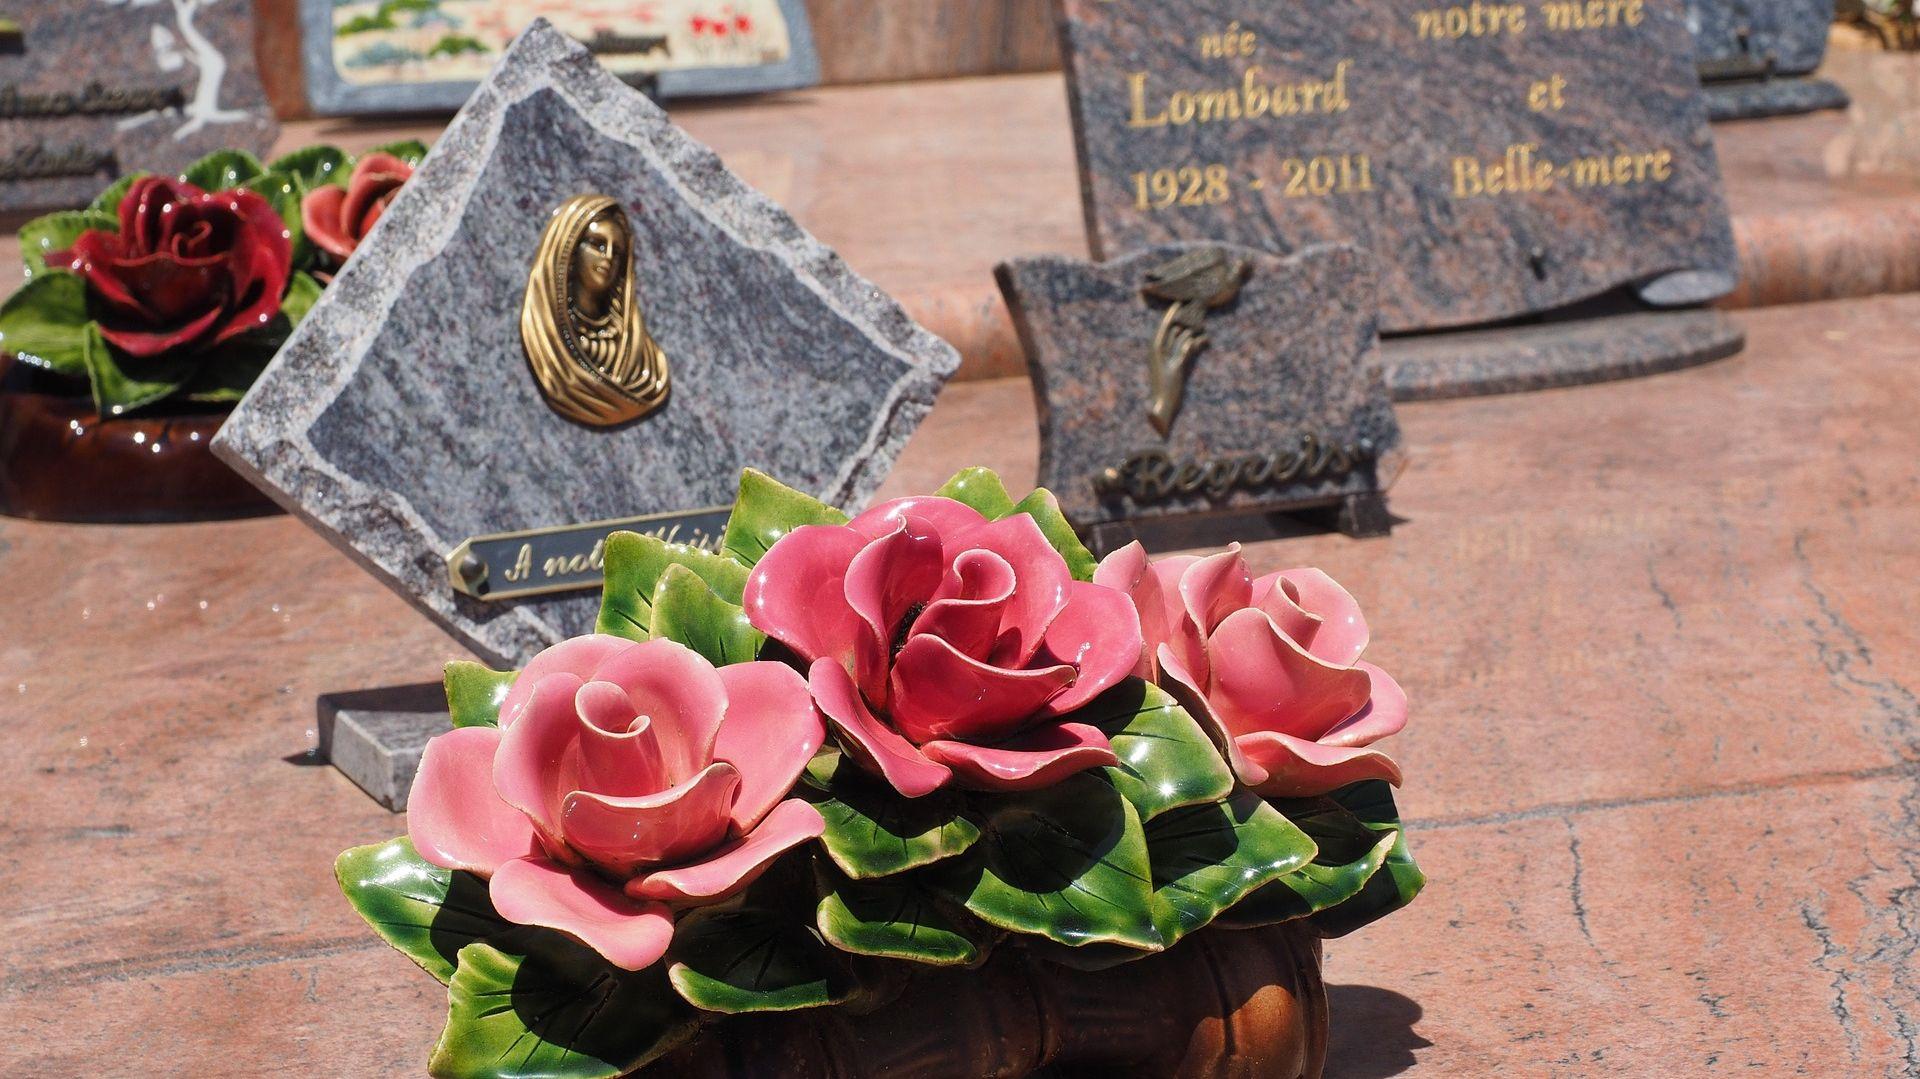 Pierre tombale commémorative, plaque funéraire avec lumière solaire,  mémorial de cimetière ou de jardin, personnalisé, résistant aux intempéries  et à la décoloration. -  France